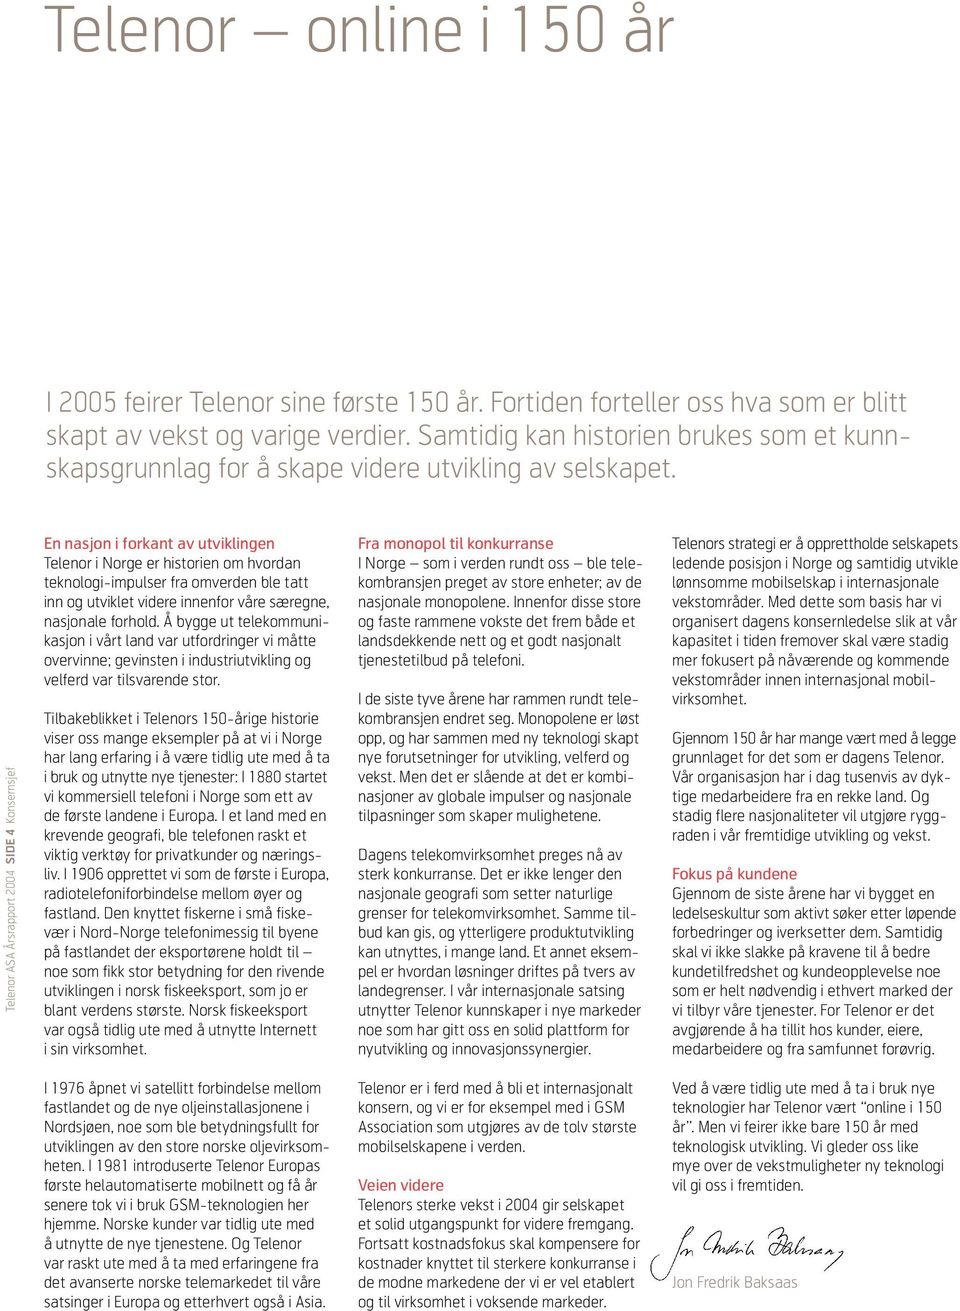 Konsernsjef Telenor ASA Årsrapport 2004 SIDE 4 En nasjon i forkant av utviklingen Telenor i Norge er historien om hvordan teknologi-impulser fra omverden ble tatt inn og utviklet videre innenfor våre